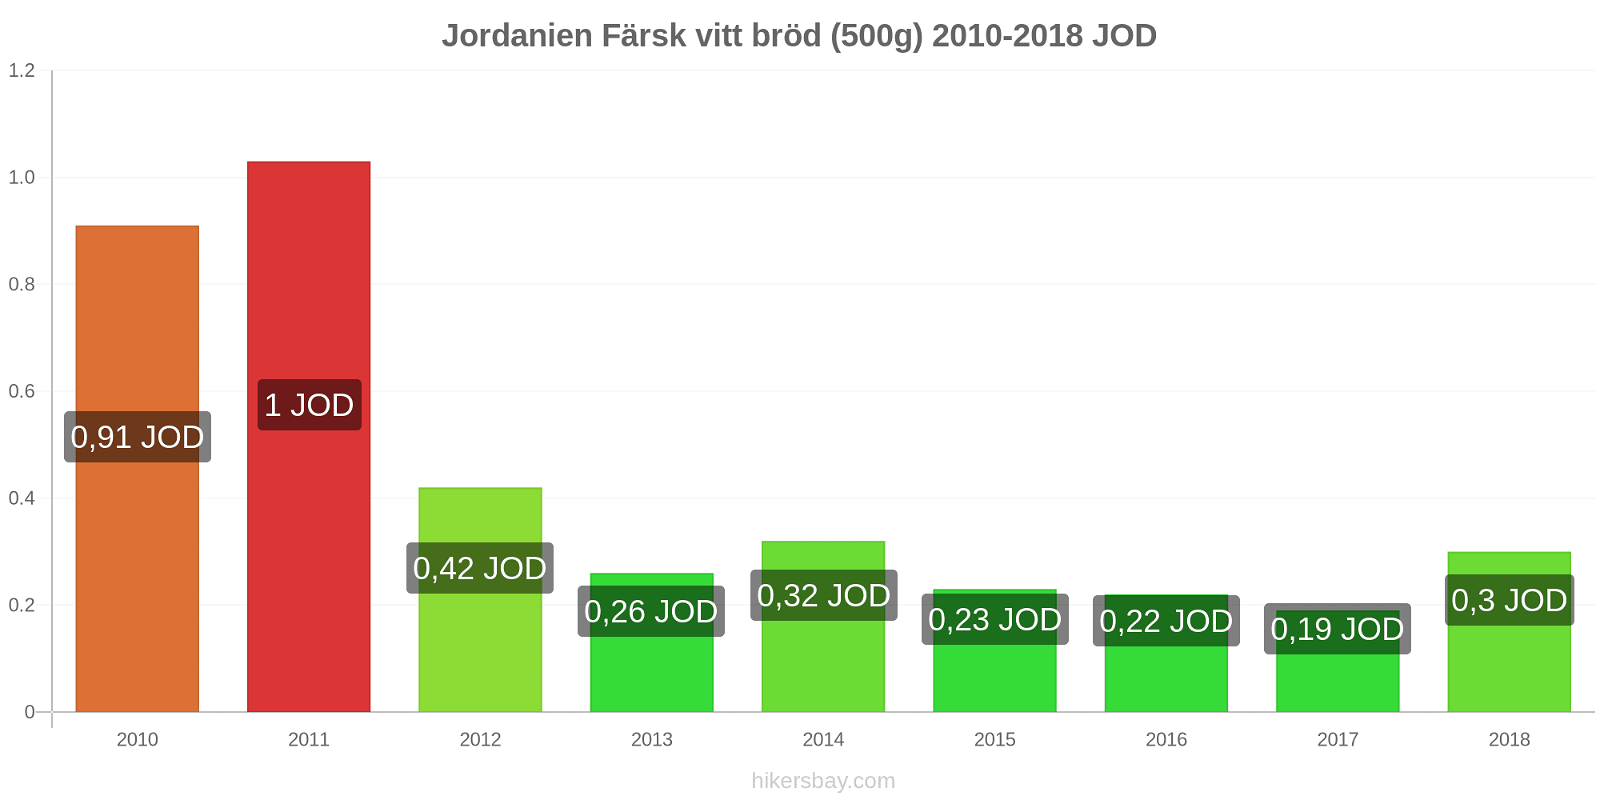 Jordanien prisändringar Färsk vitt bröd (500g) hikersbay.com